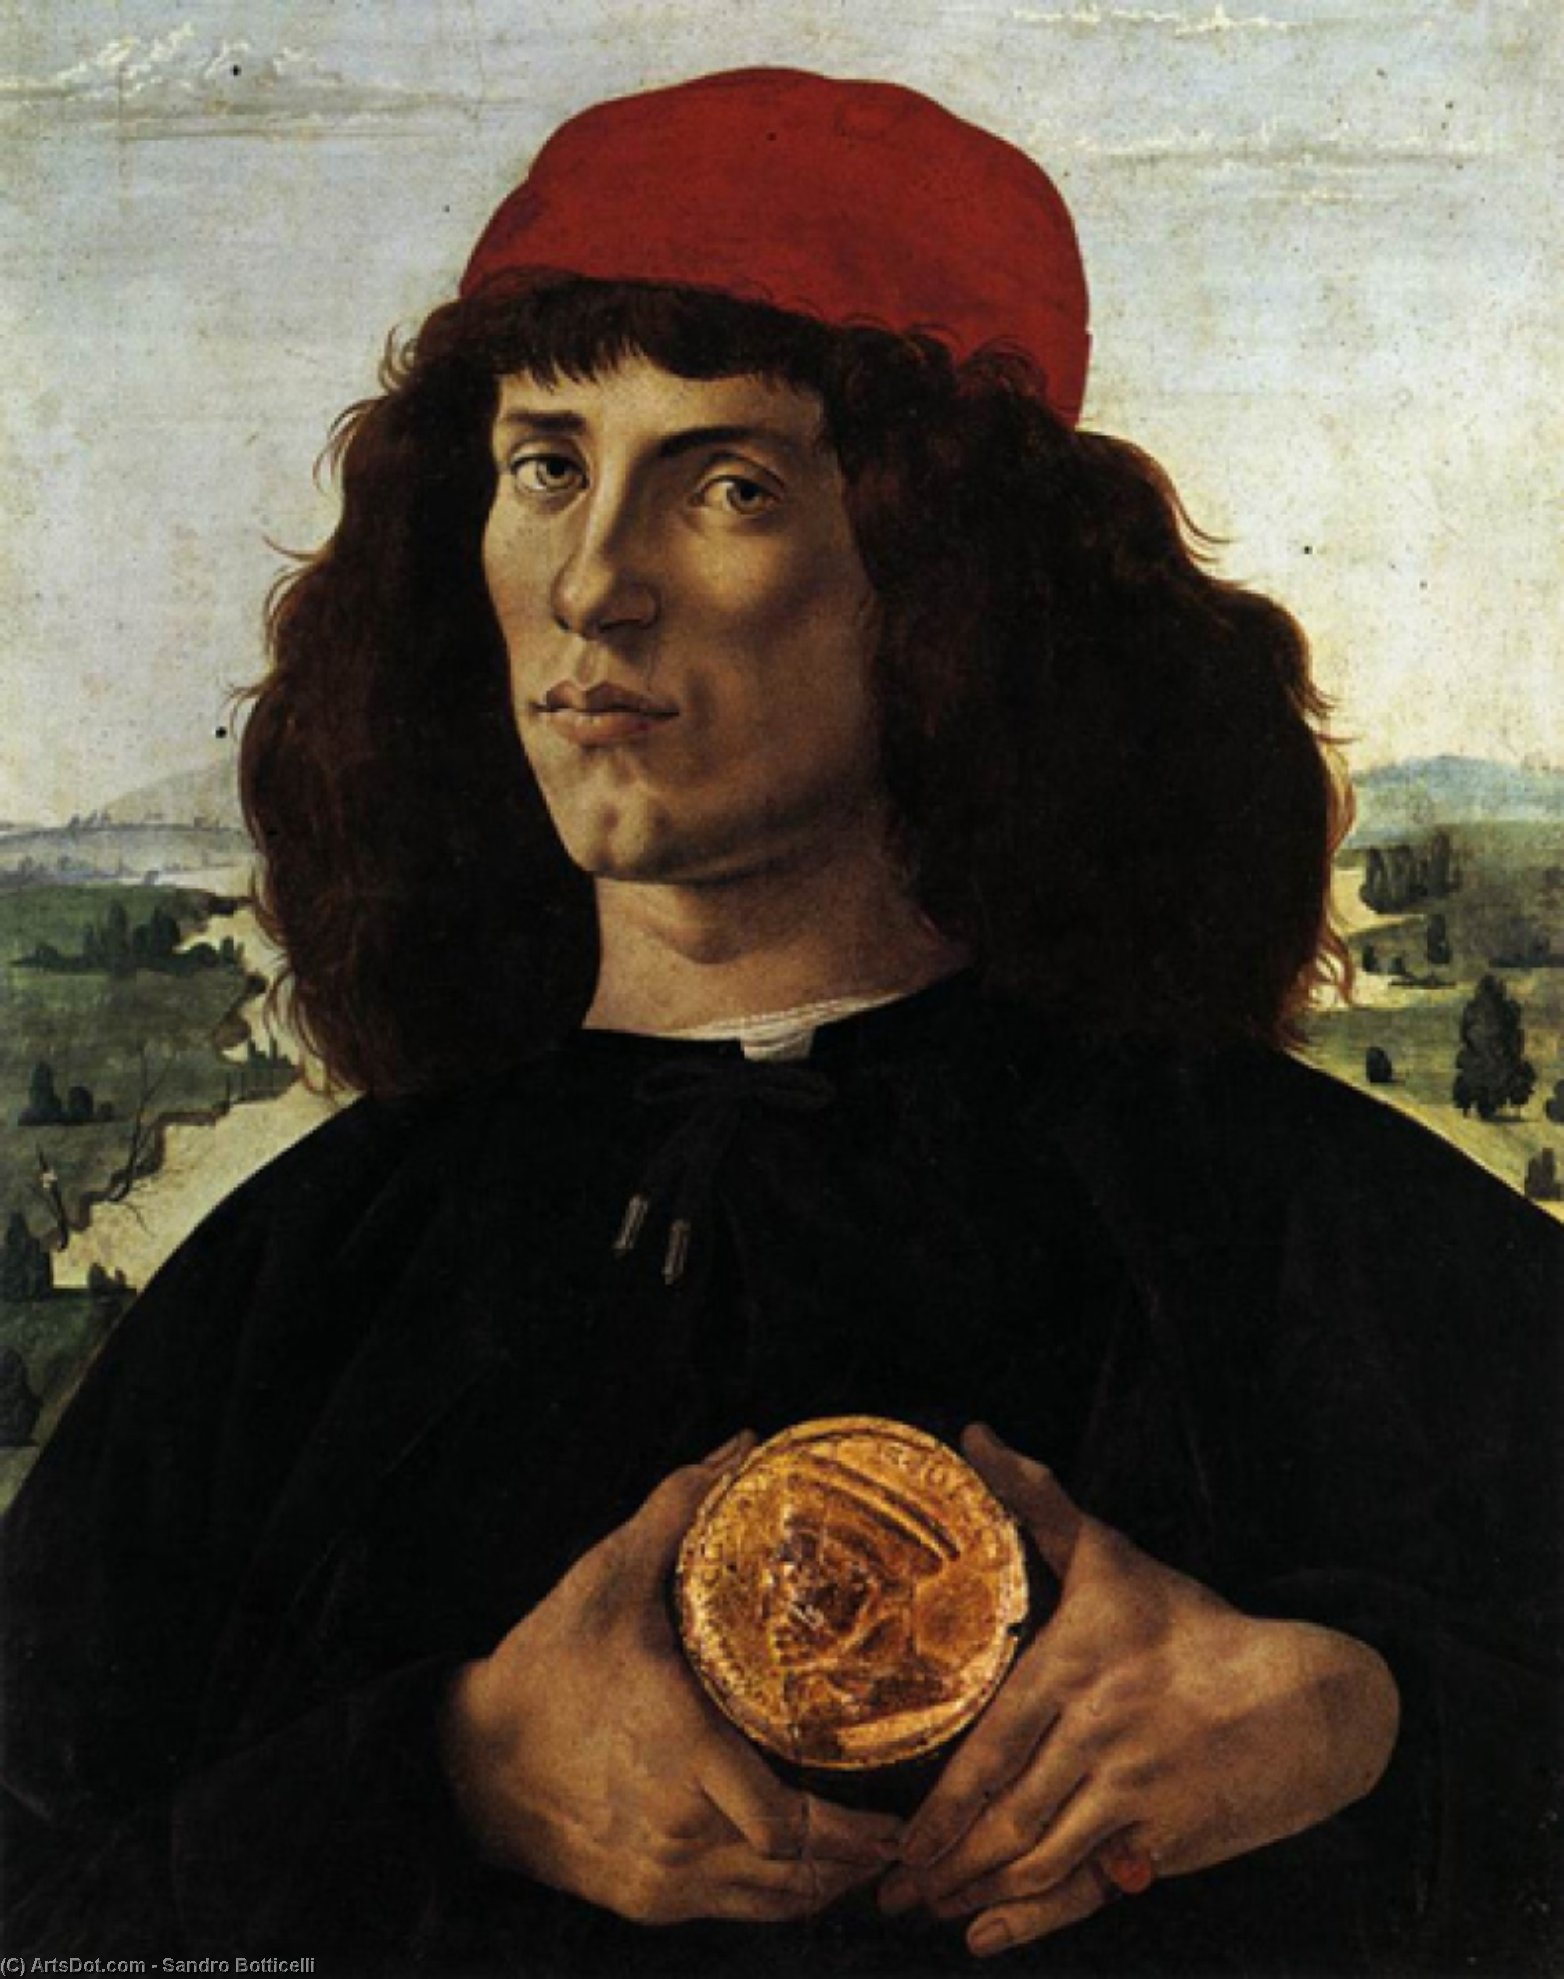 WikiOO.org - Enciklopedija likovnih umjetnosti - Slikarstvo, umjetnička djela Sandro Botticelli - Portrait of a Man with a Medal of Cosimo the Elder